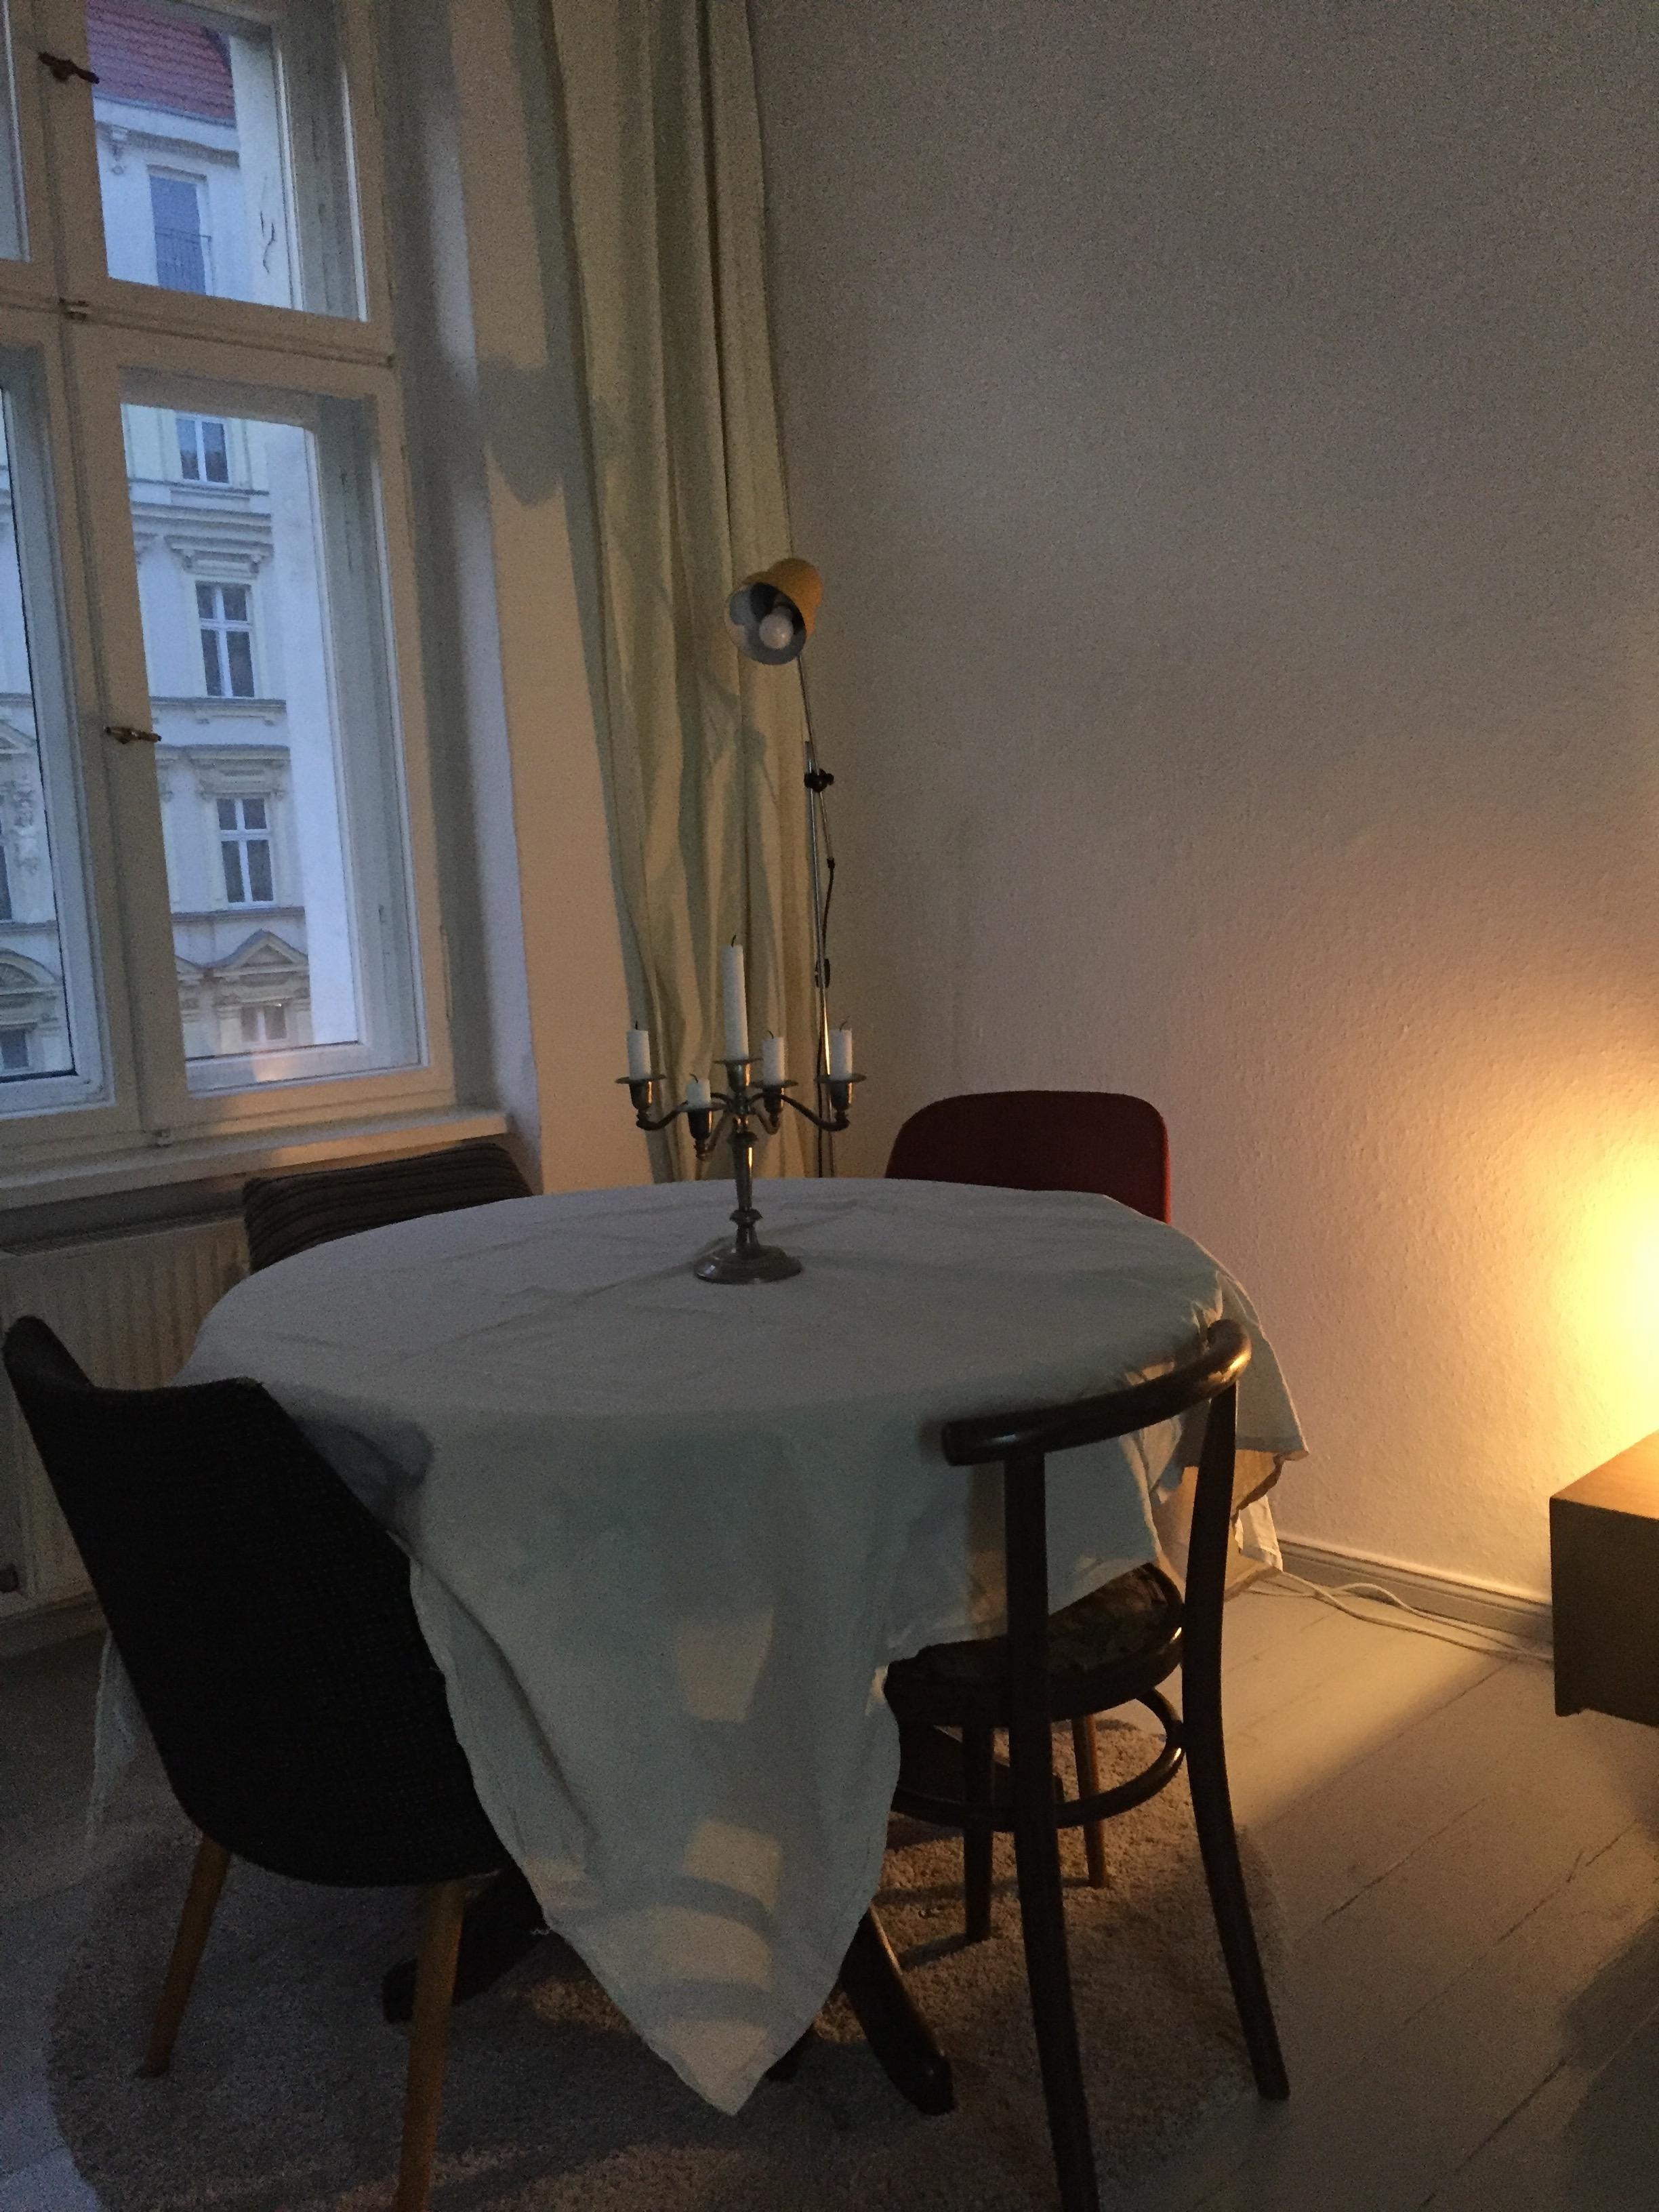 Restaurant feeling at home! #wirBleibenZuhause #living #wohnzimmer